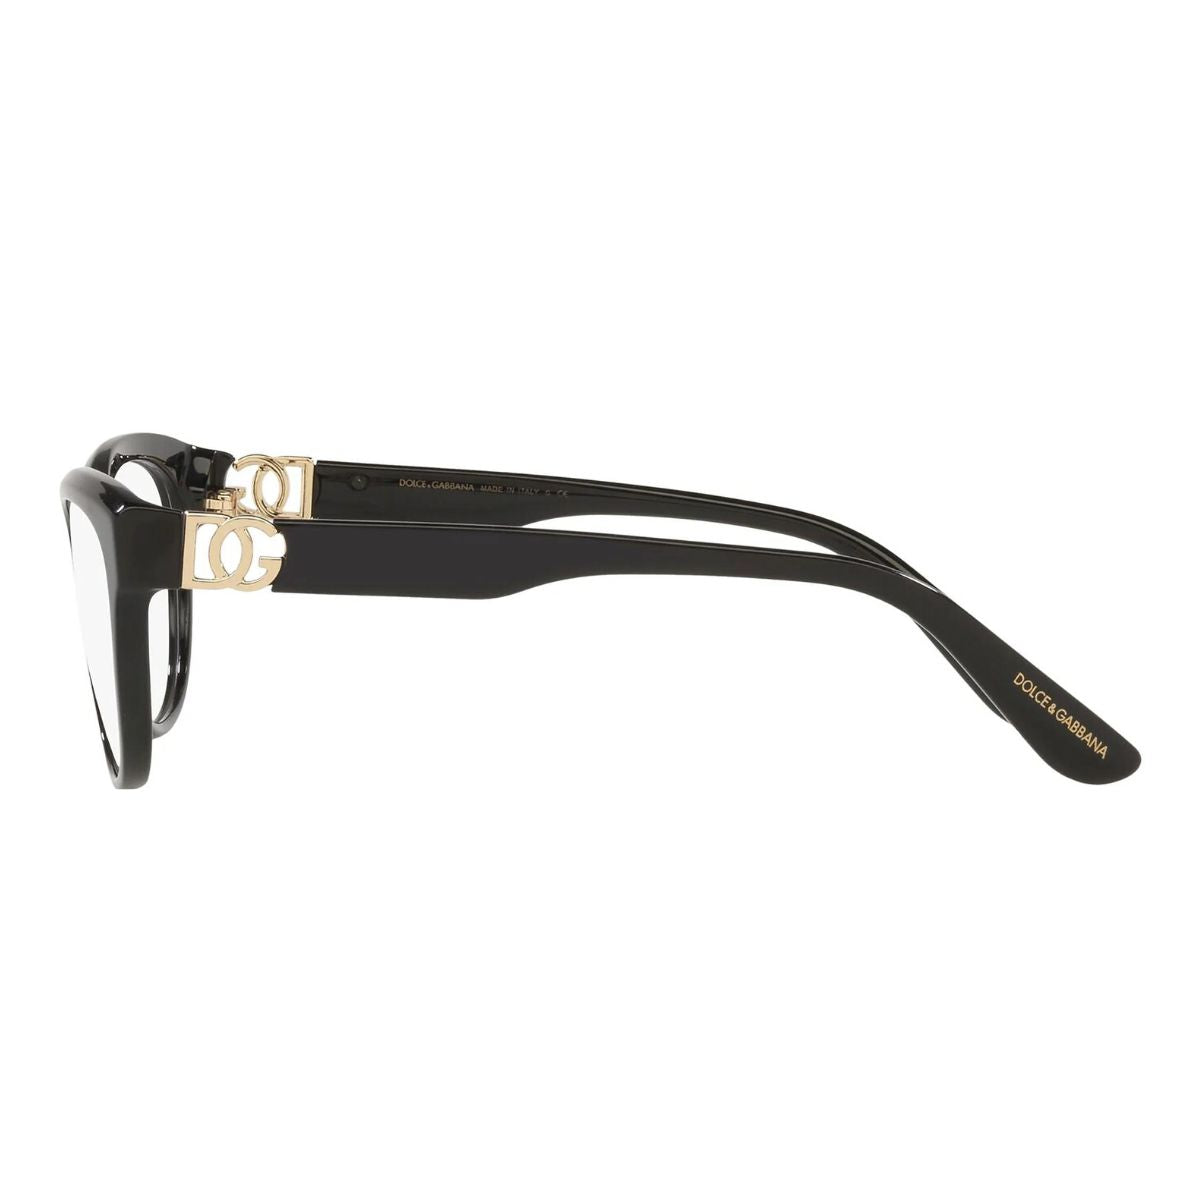 "Dolce&Gabbana 3342 501 eyesight glasses frame for women's online at optorium"